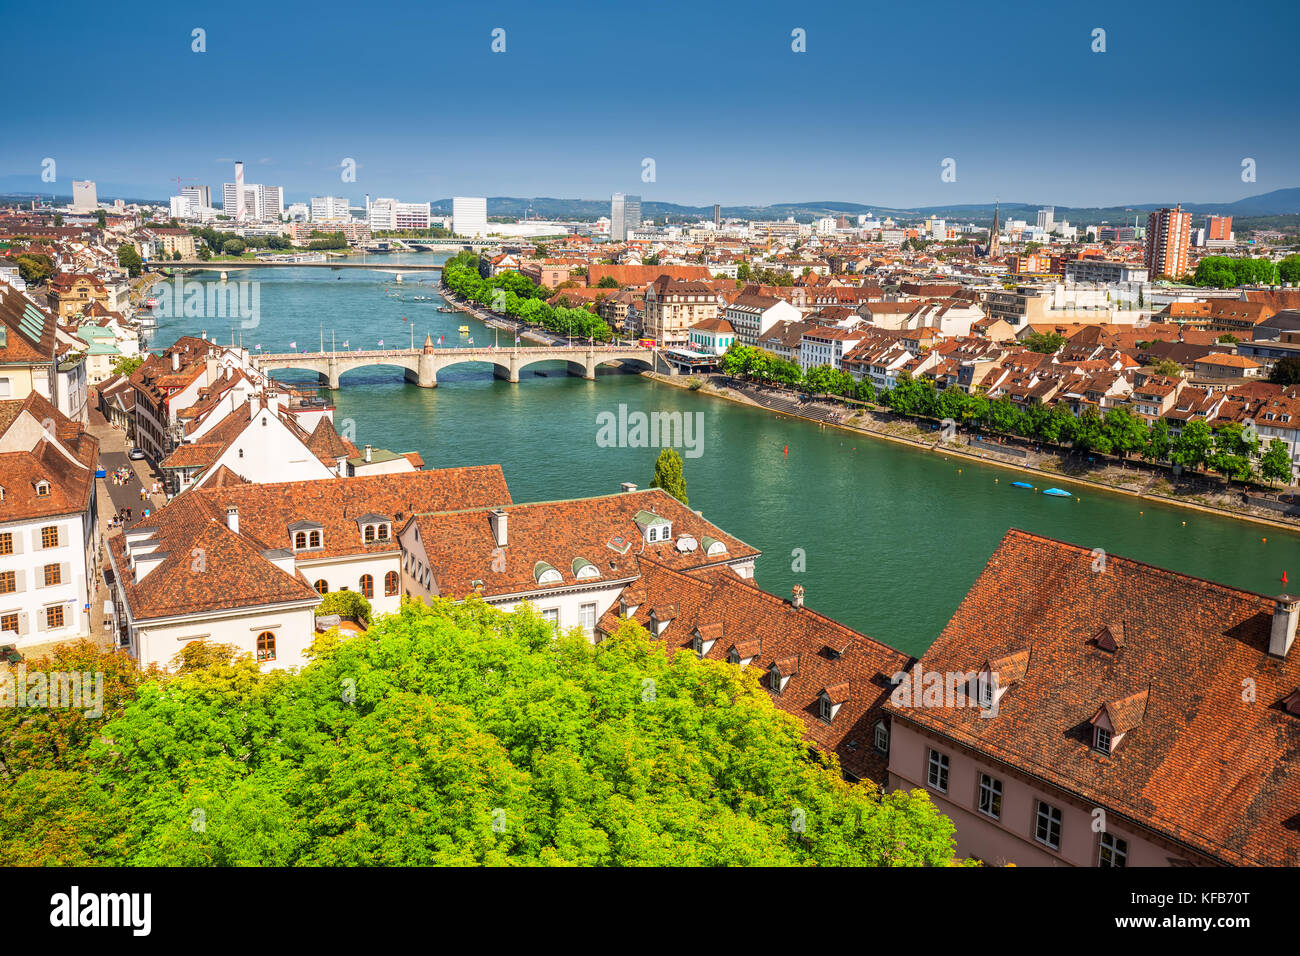 Altstadt von Basel mit den Rhein, Schweiz, Europa. Basel ist eine Stadt im Nordwesten der Schweiz am Rhein und Dritten - die meisten - Bevölkerung Stockfoto